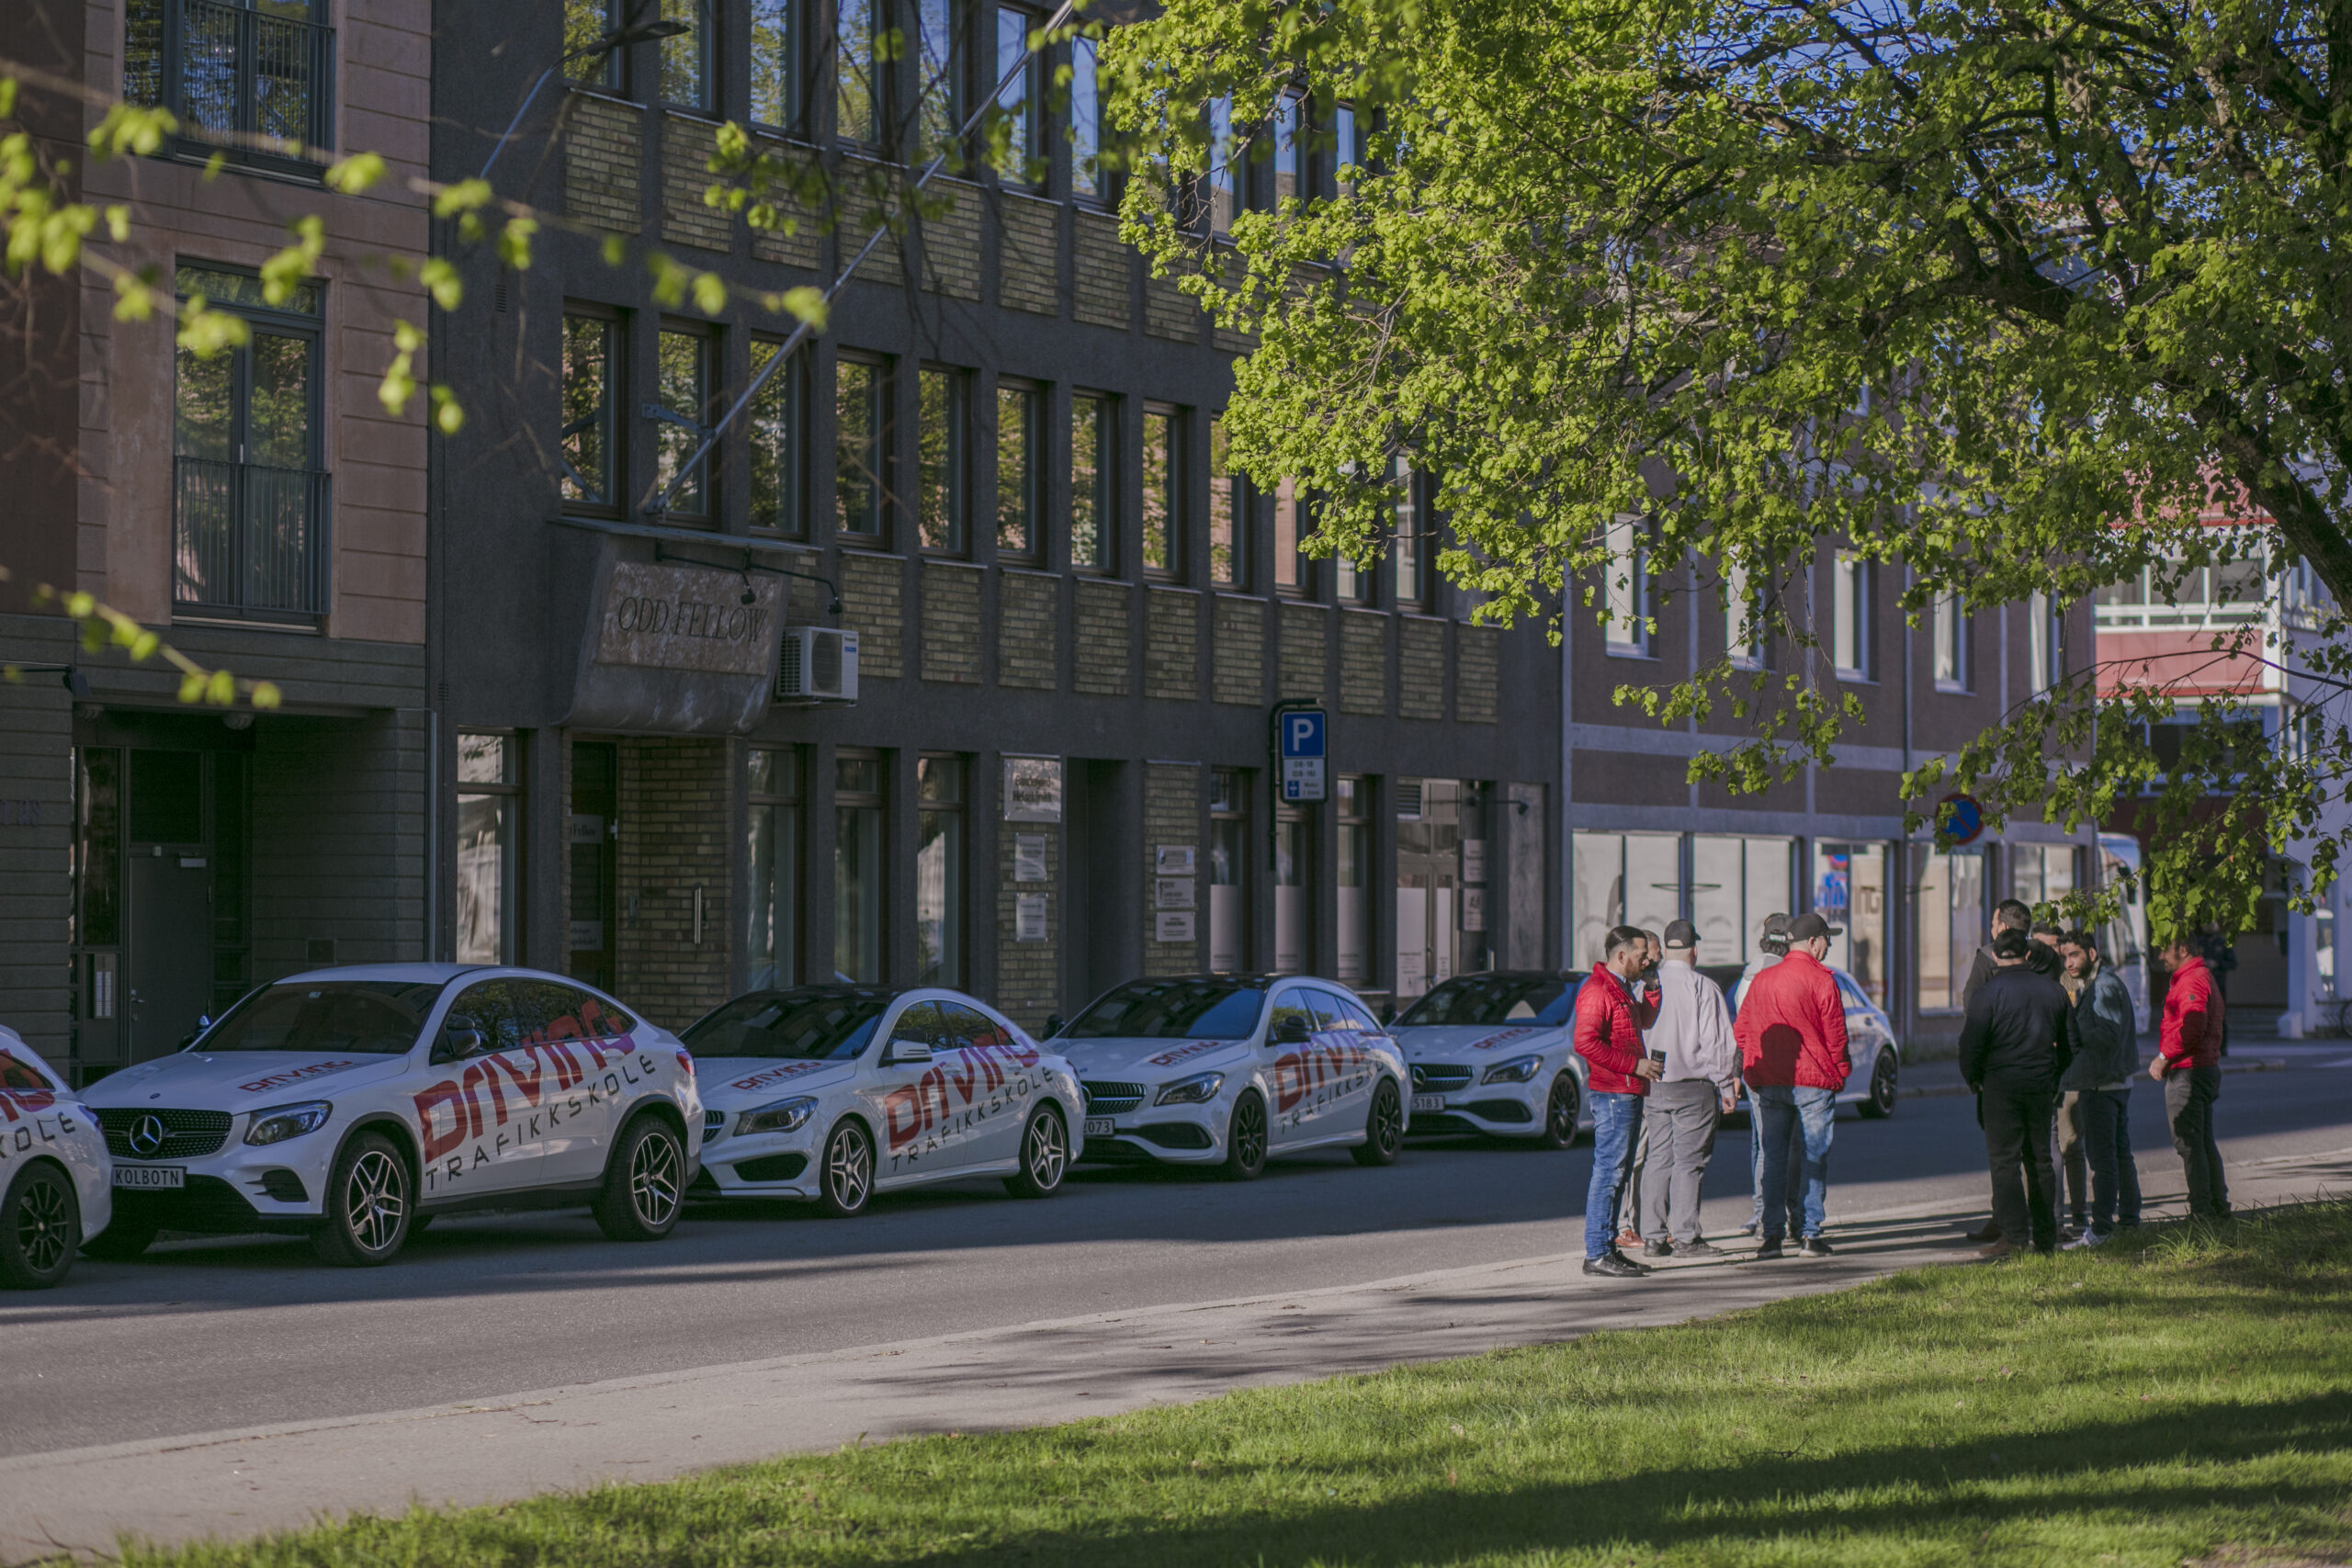 Biler med Driving Trafikkskole sin logo står lukeparkert på rad utenfor en bygning. Kjørelærere med elever står på andre siden av veien og prater.